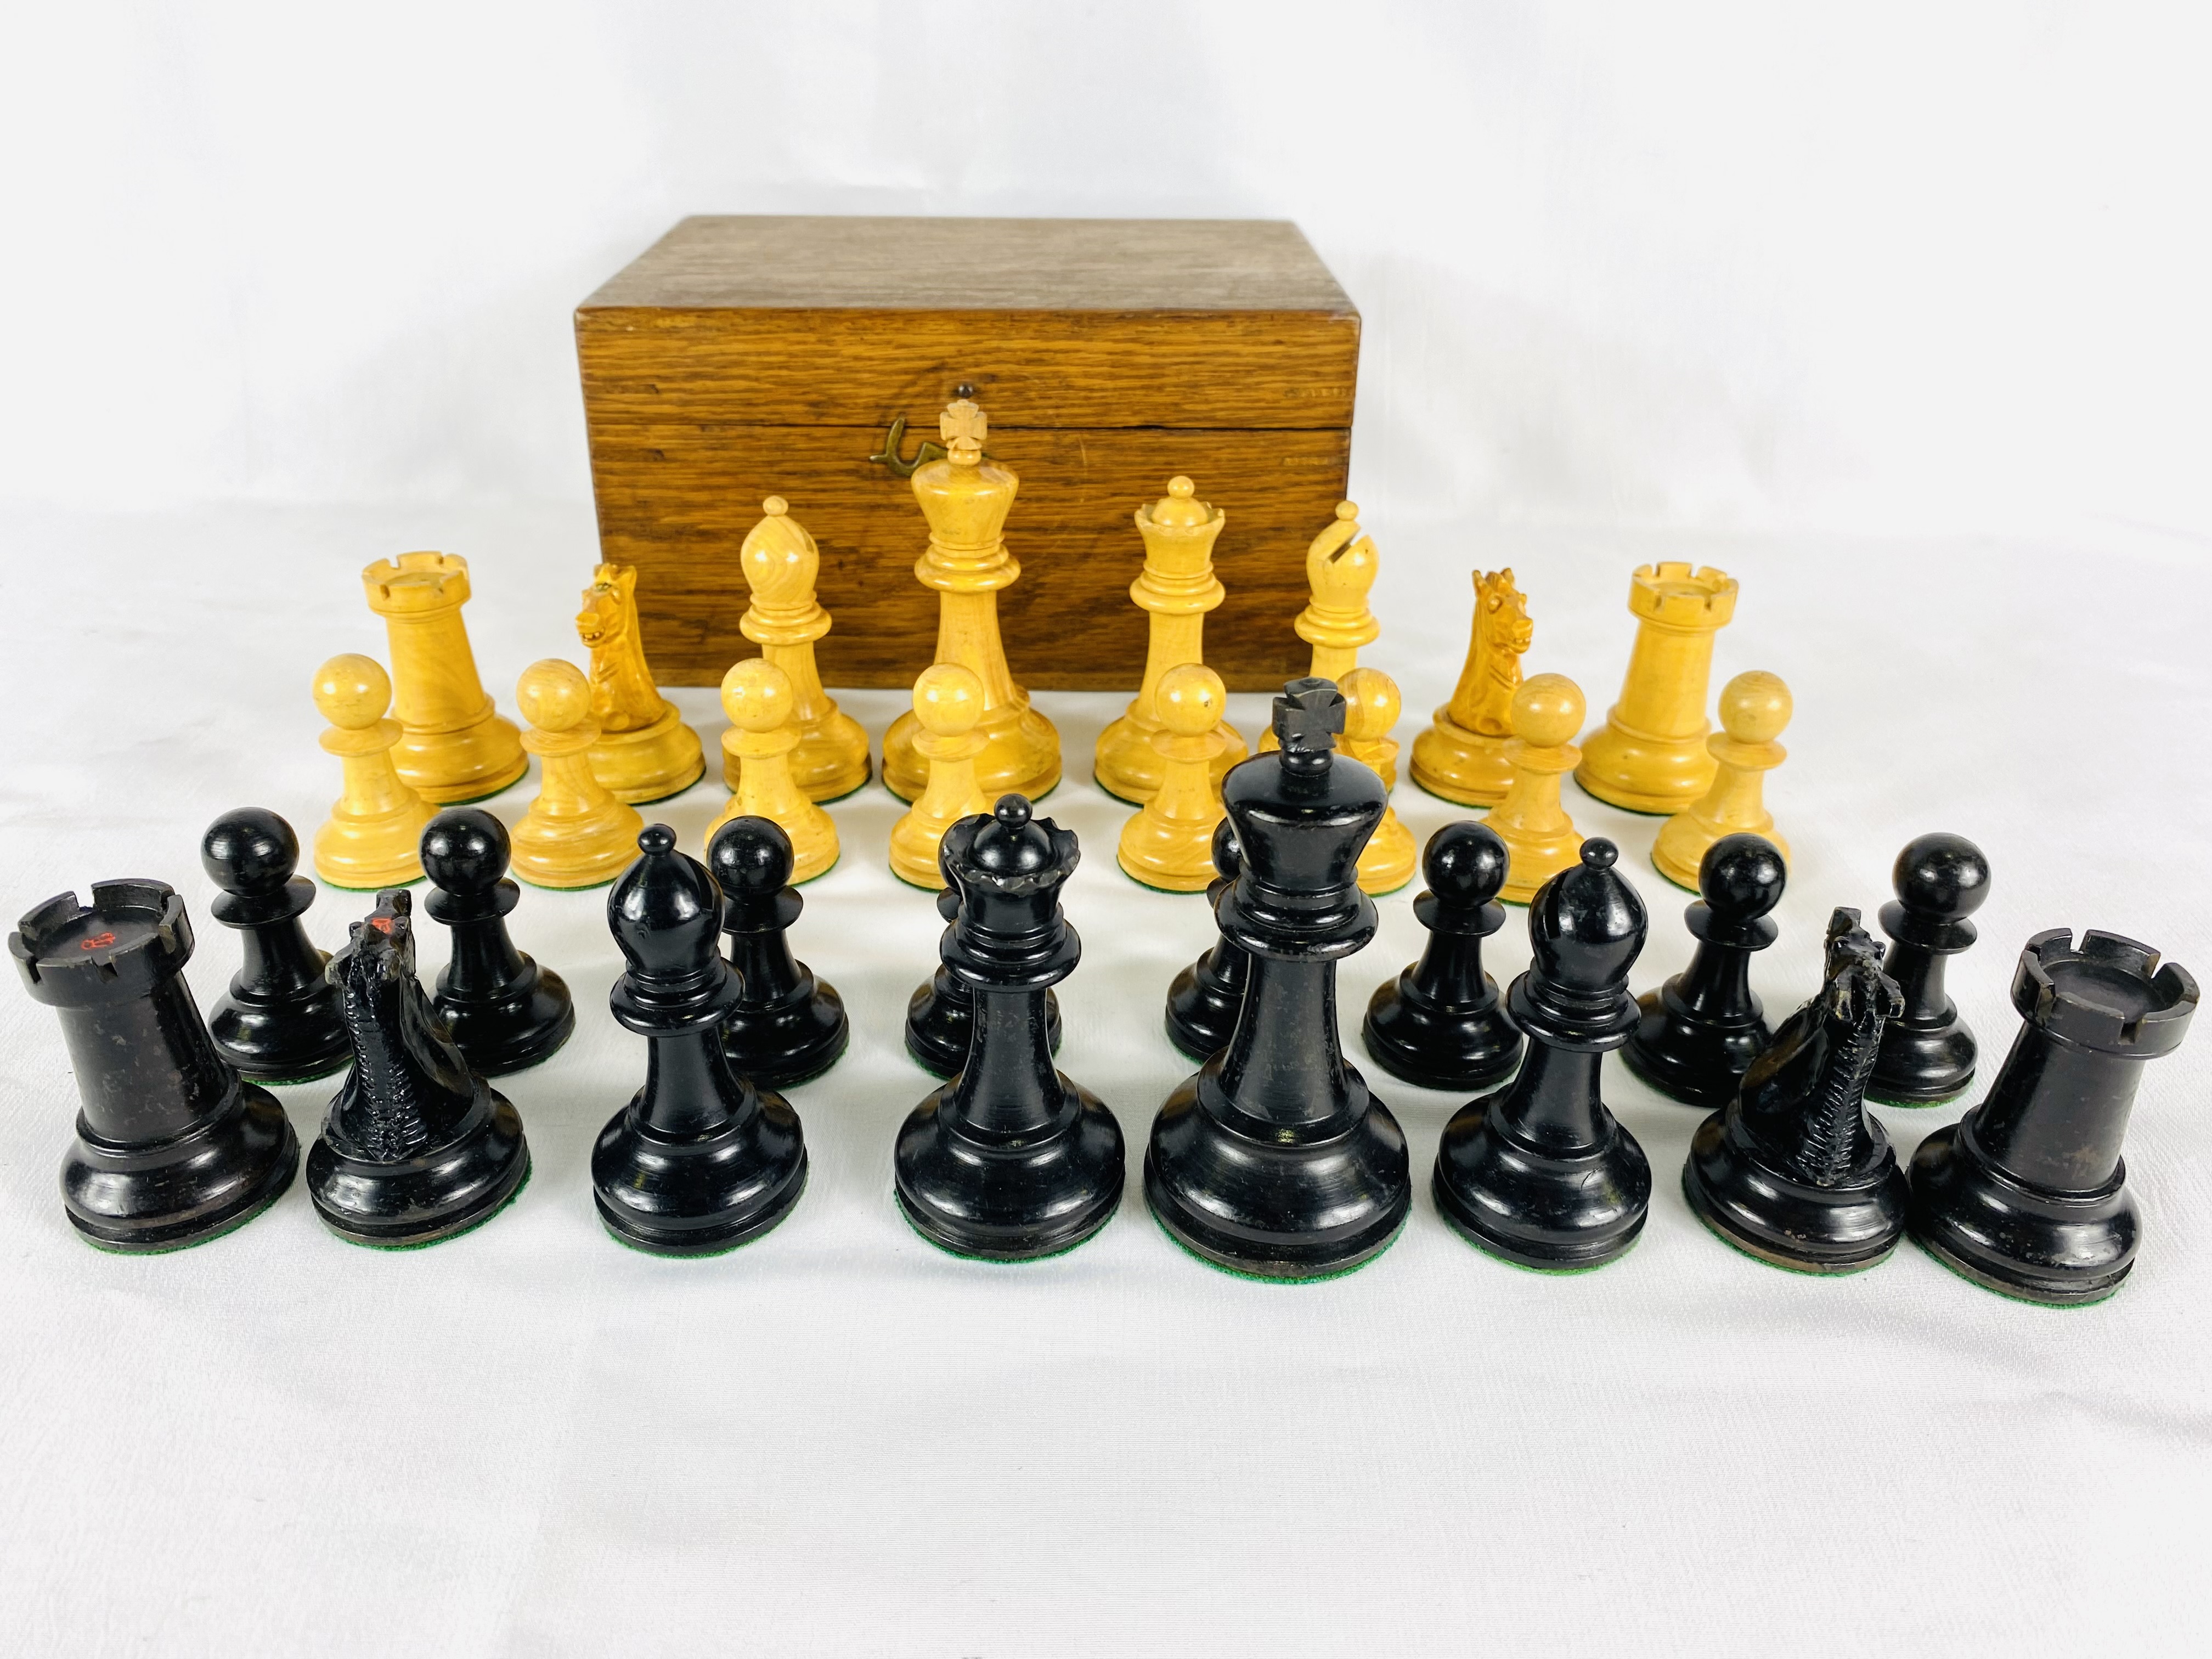 Boxwood and ebony Staunton style chess set